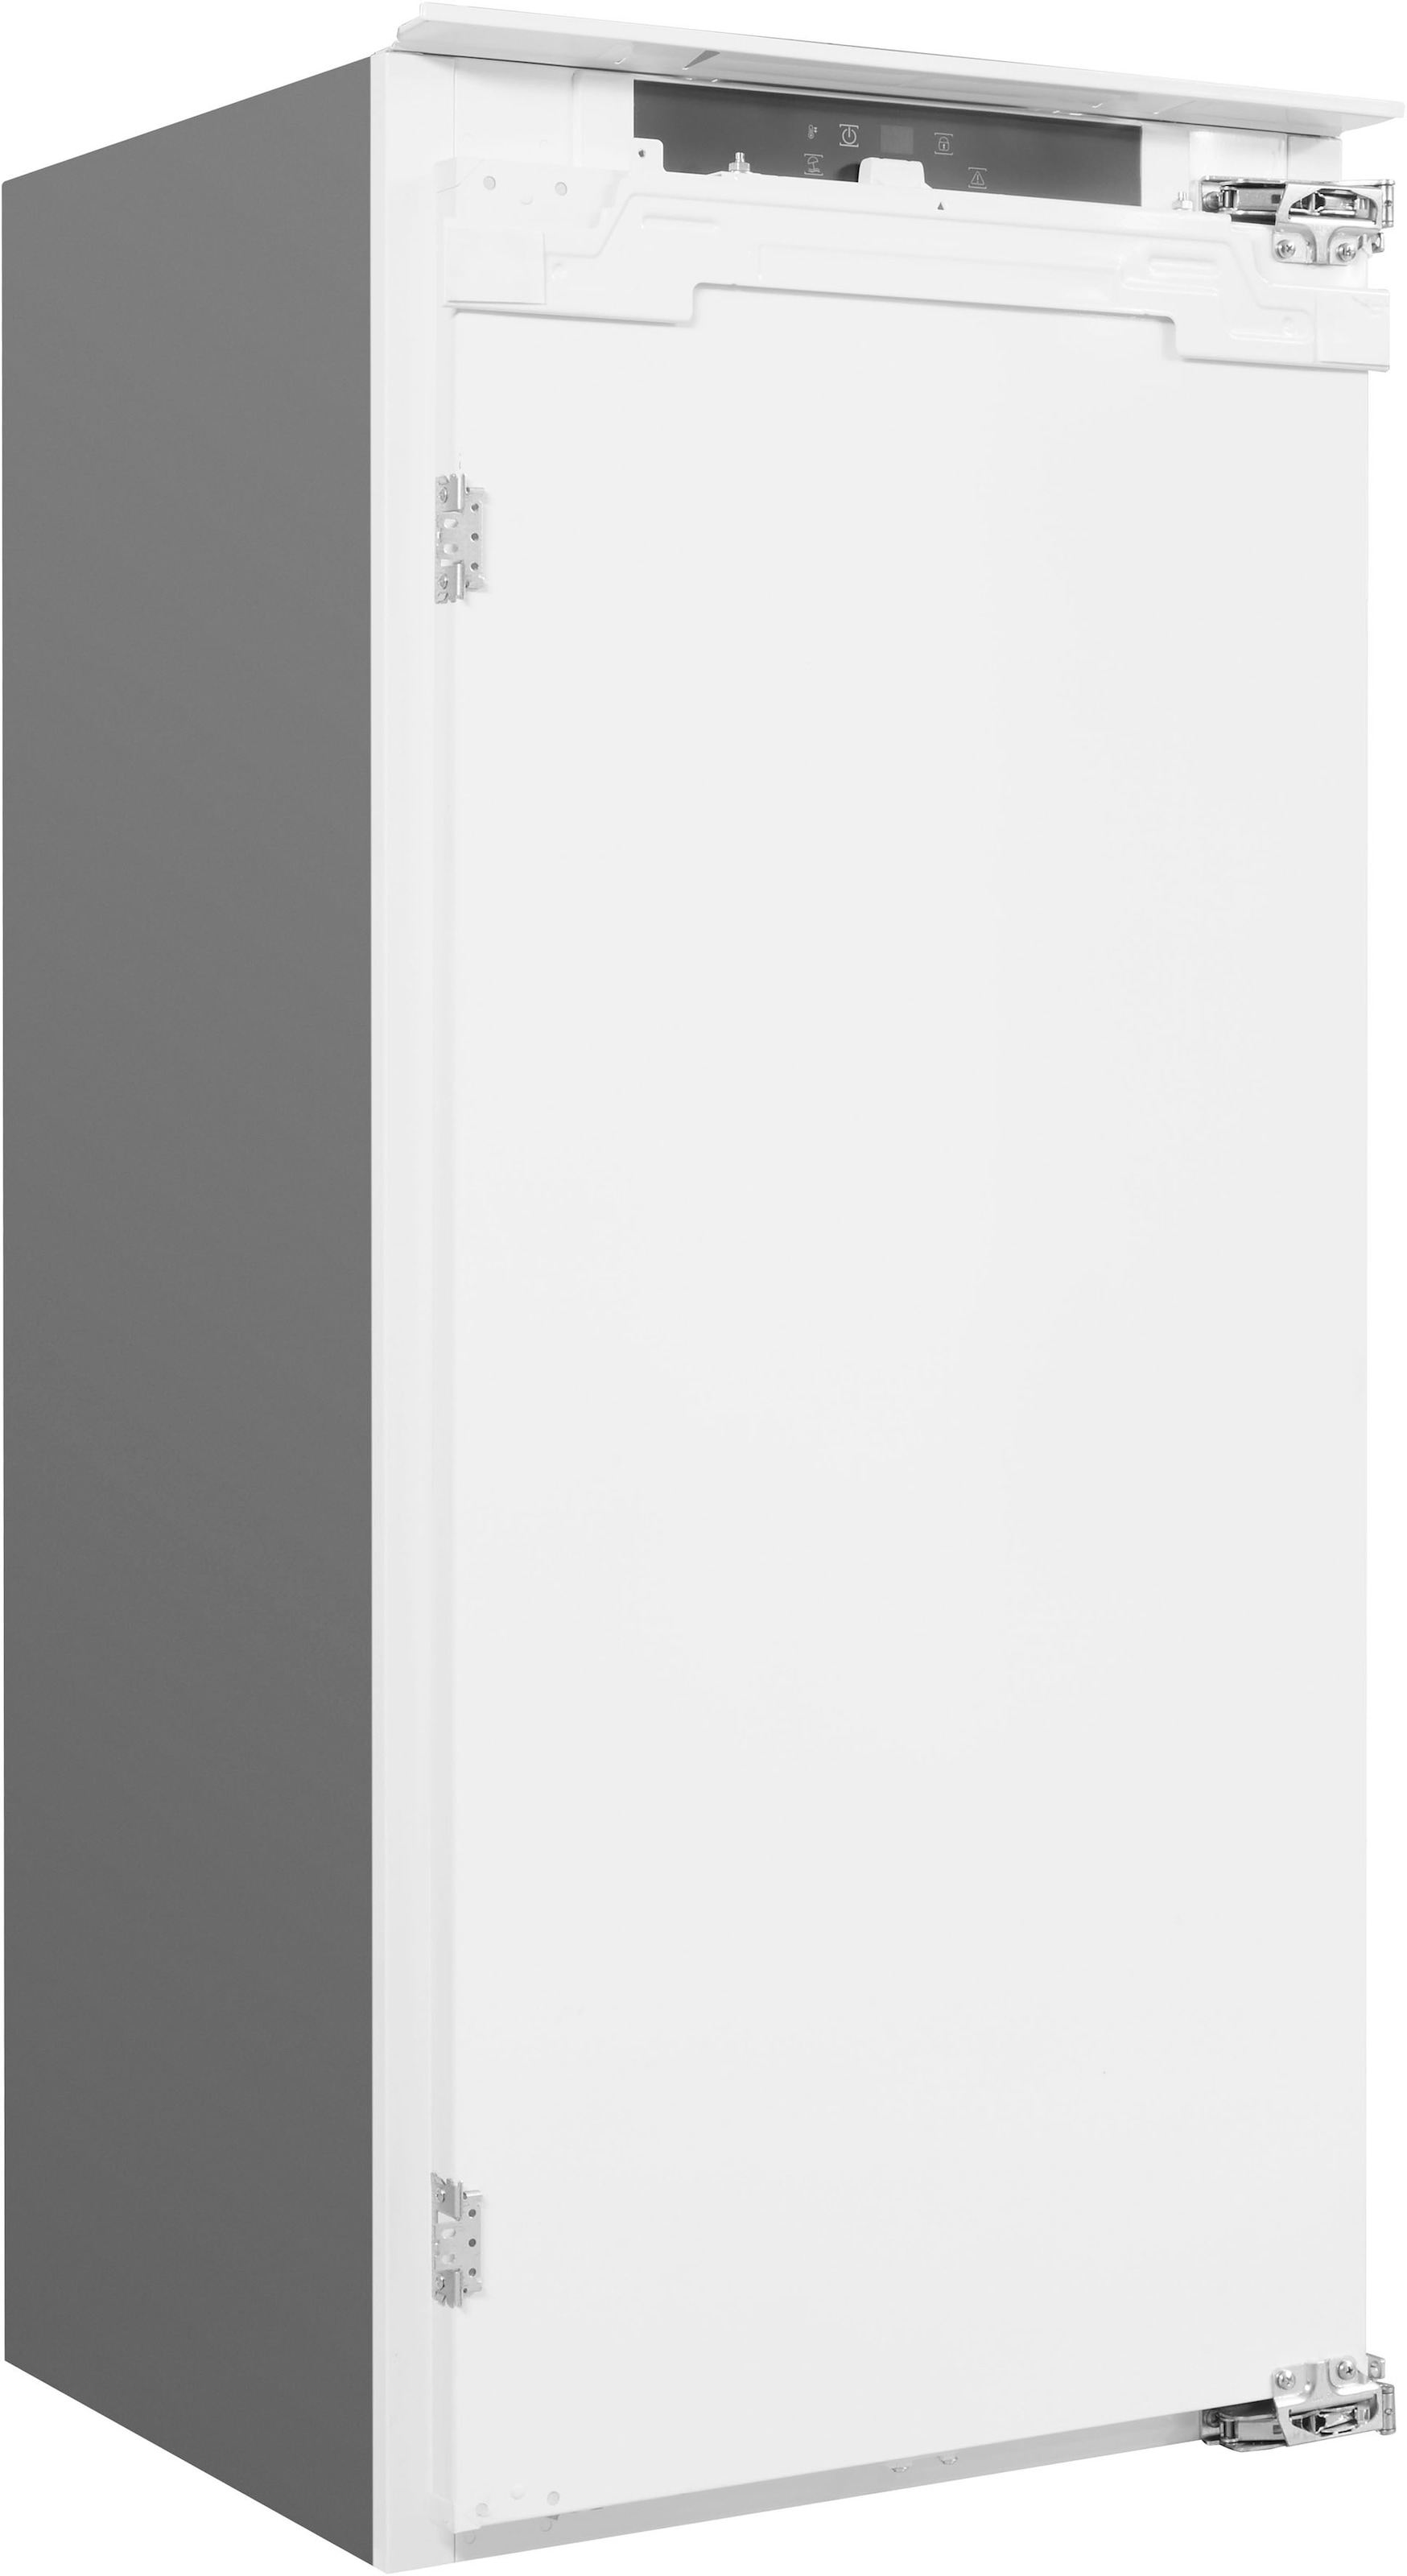 BAUKNECHT Einbaukühlschrank »KSI 12VF3«, KSI 12VF3, 122 cm hoch, 55,7 cm breit